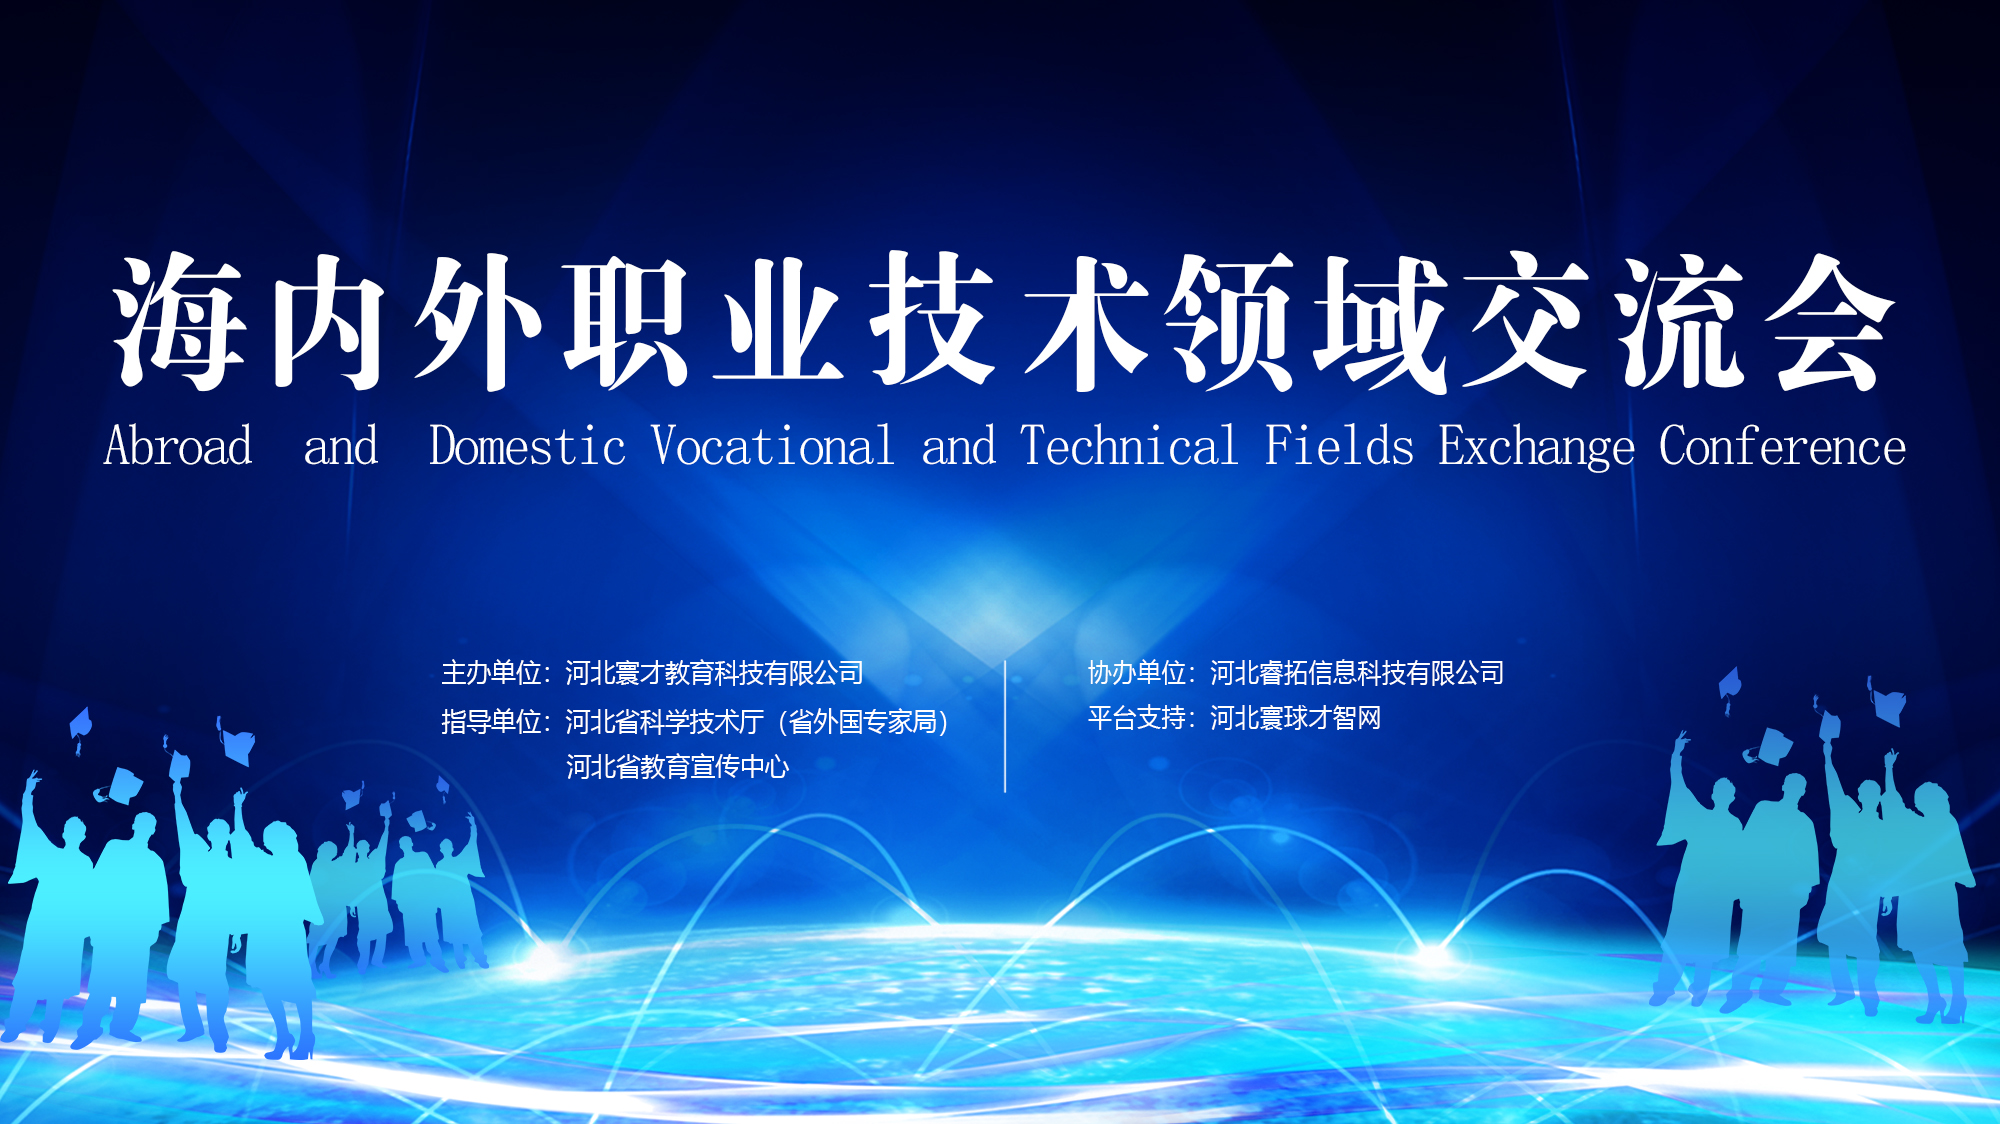 Conférence d’échanges dans le secteur technique et professionnel en Chine et à l'étranger a été tenue avec success